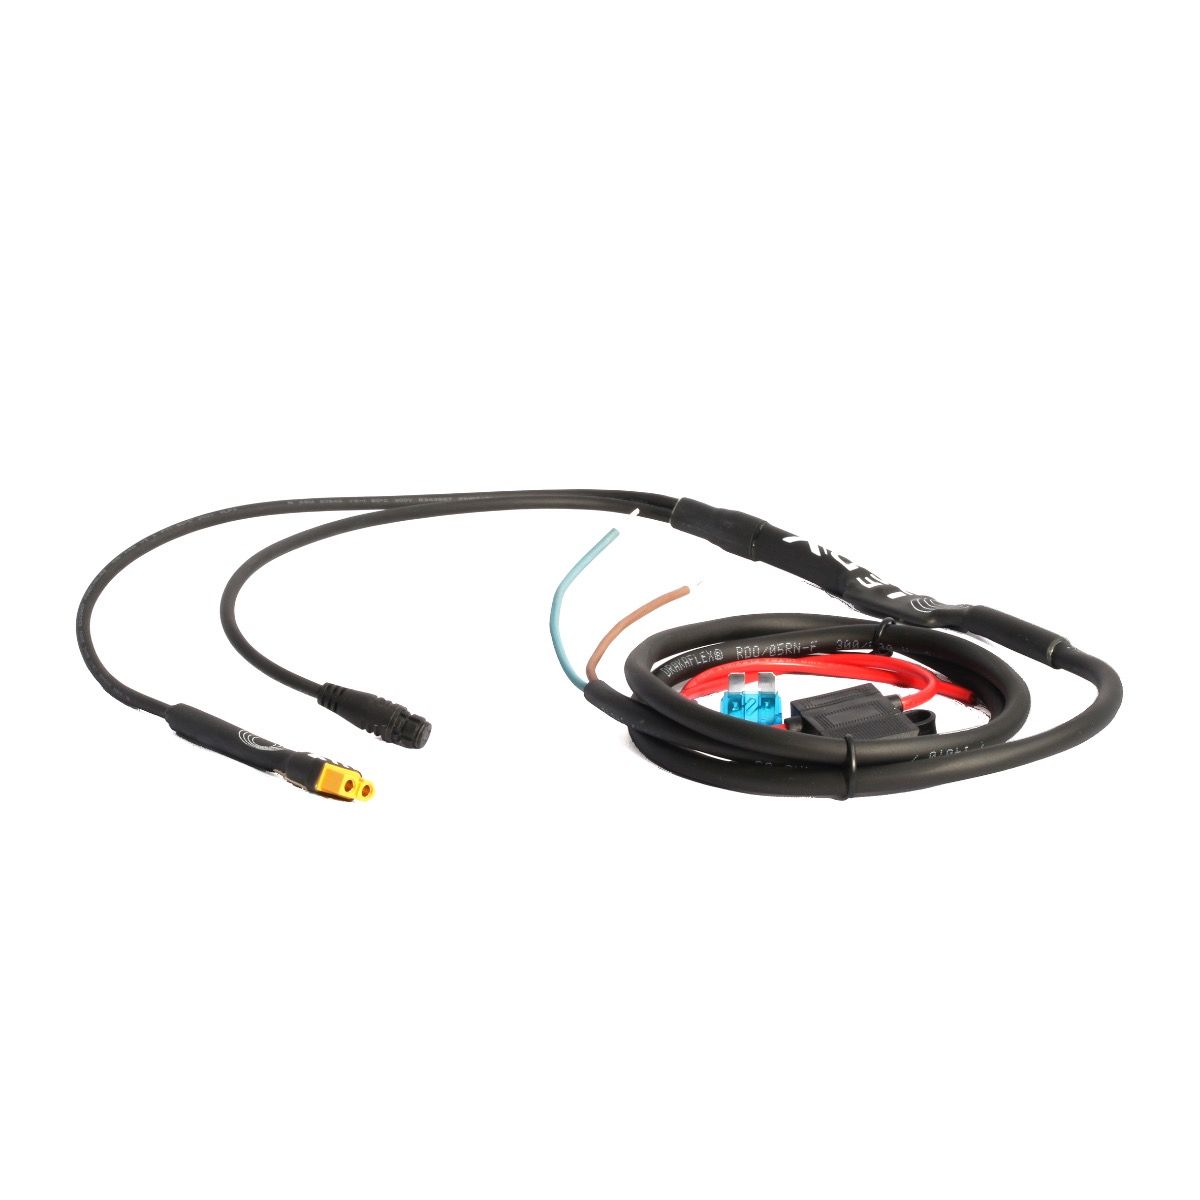 LEDX MC-kabel 150 cm, XT60 kontakt